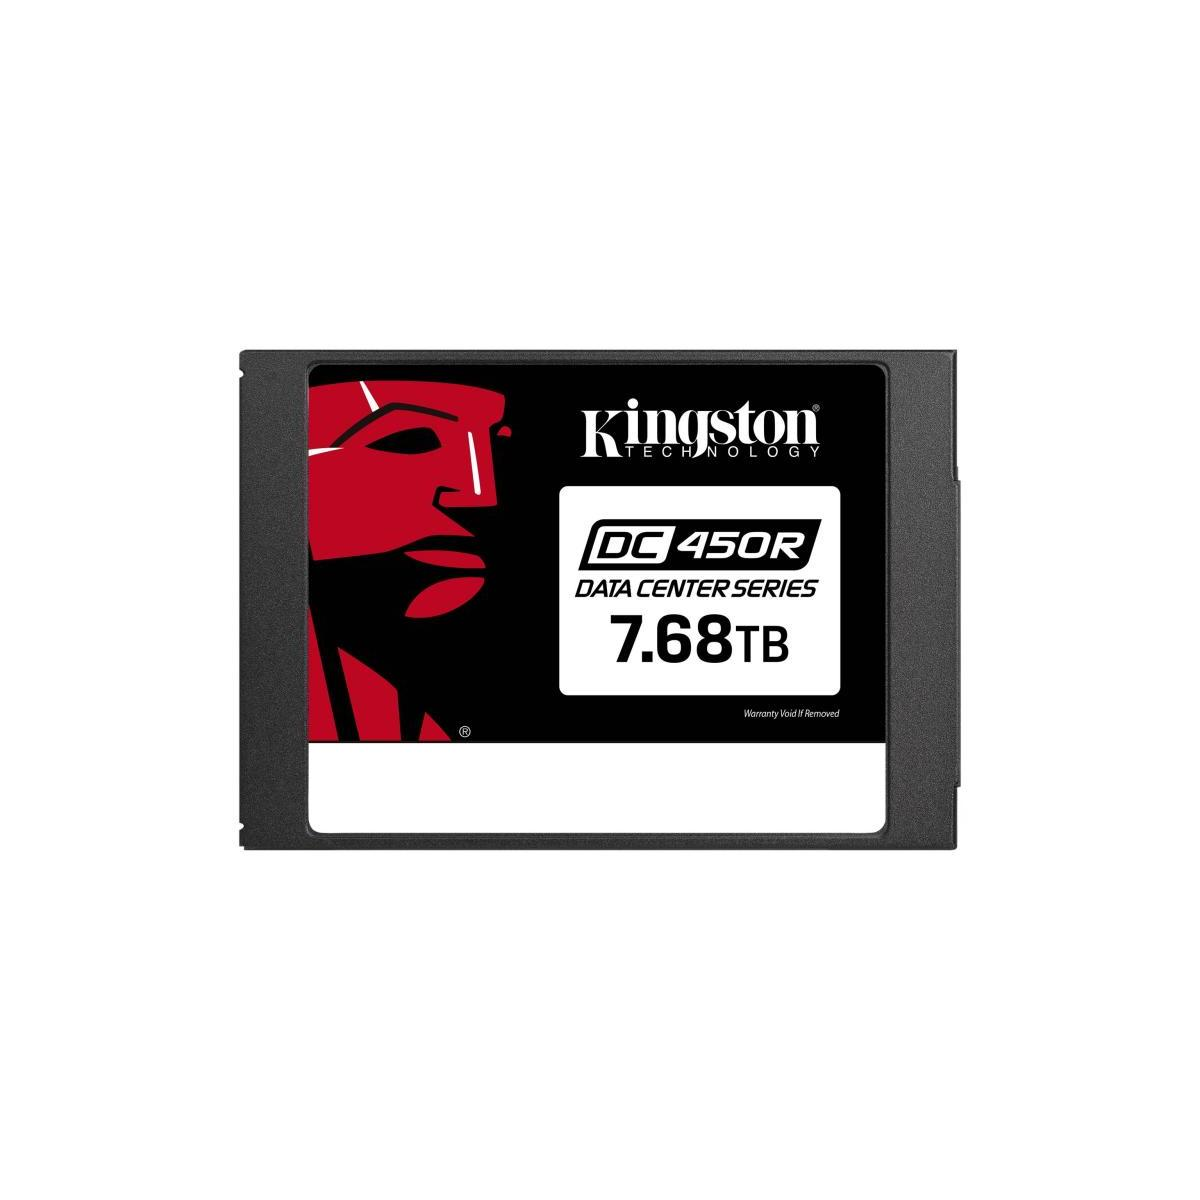 KINGSTON Kingston Data Center TB, (SSD intern, SSD, 7,68 verschlüsselt), intern 6Gb/s, 2,5 SATA DC450R - 7.68TB Zoll